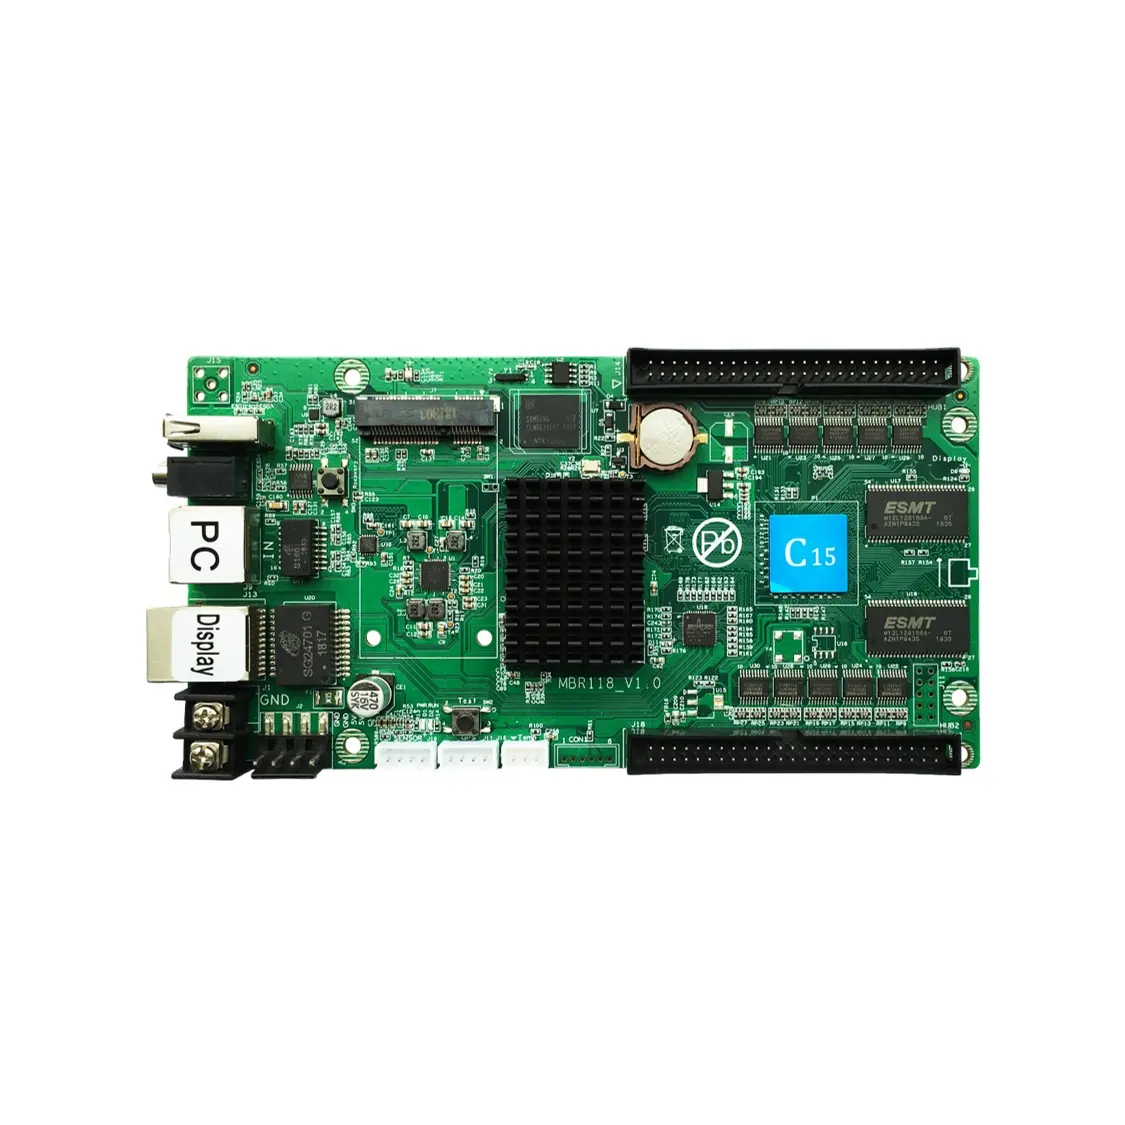 グレースケールHD-C15(C10) フルカラーハイグレーLEDディスプレイコントロールカードネットUは、画像、オーディオ、ビデオなどをサポートします。